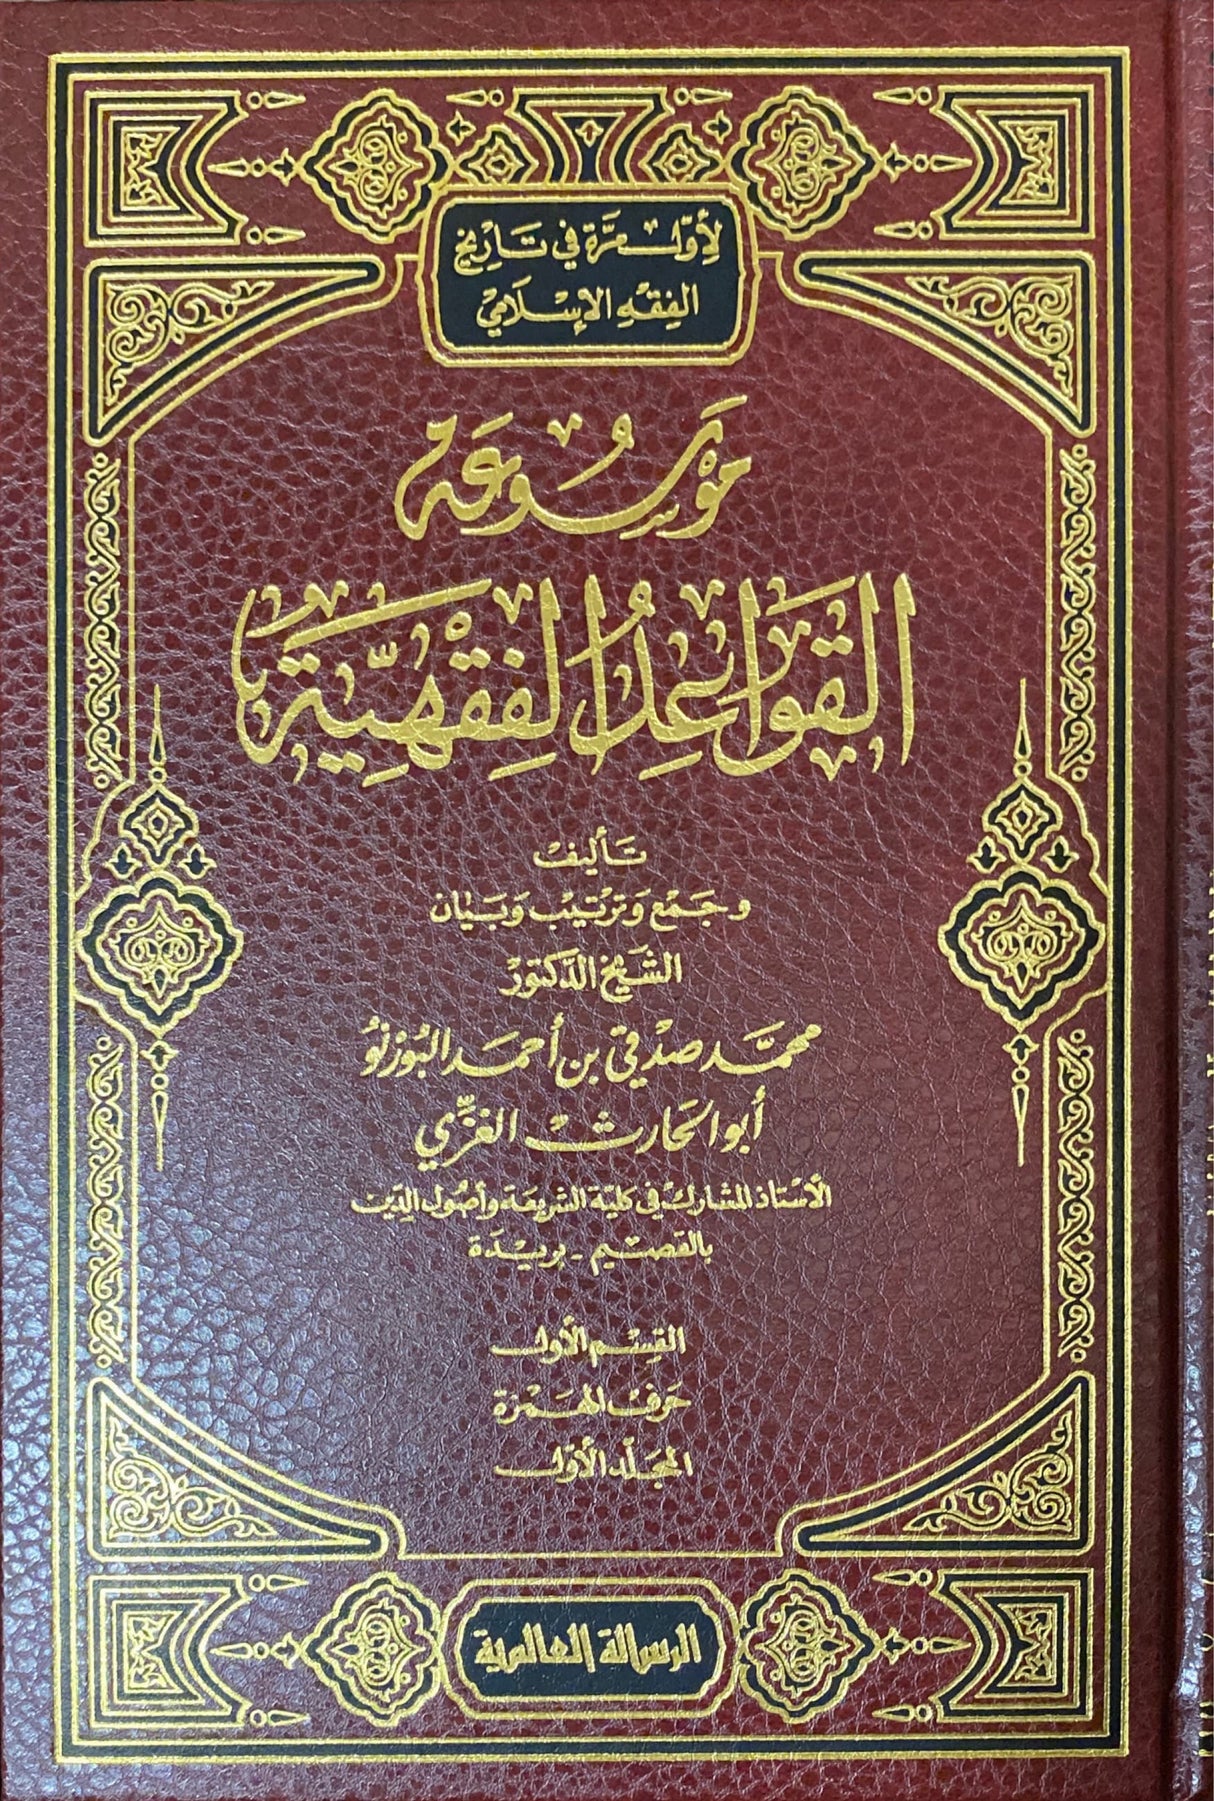 موسوعة القواعد الفقهية Mawsua Al Qawaid Al Fiqhiyah (13 Vol)